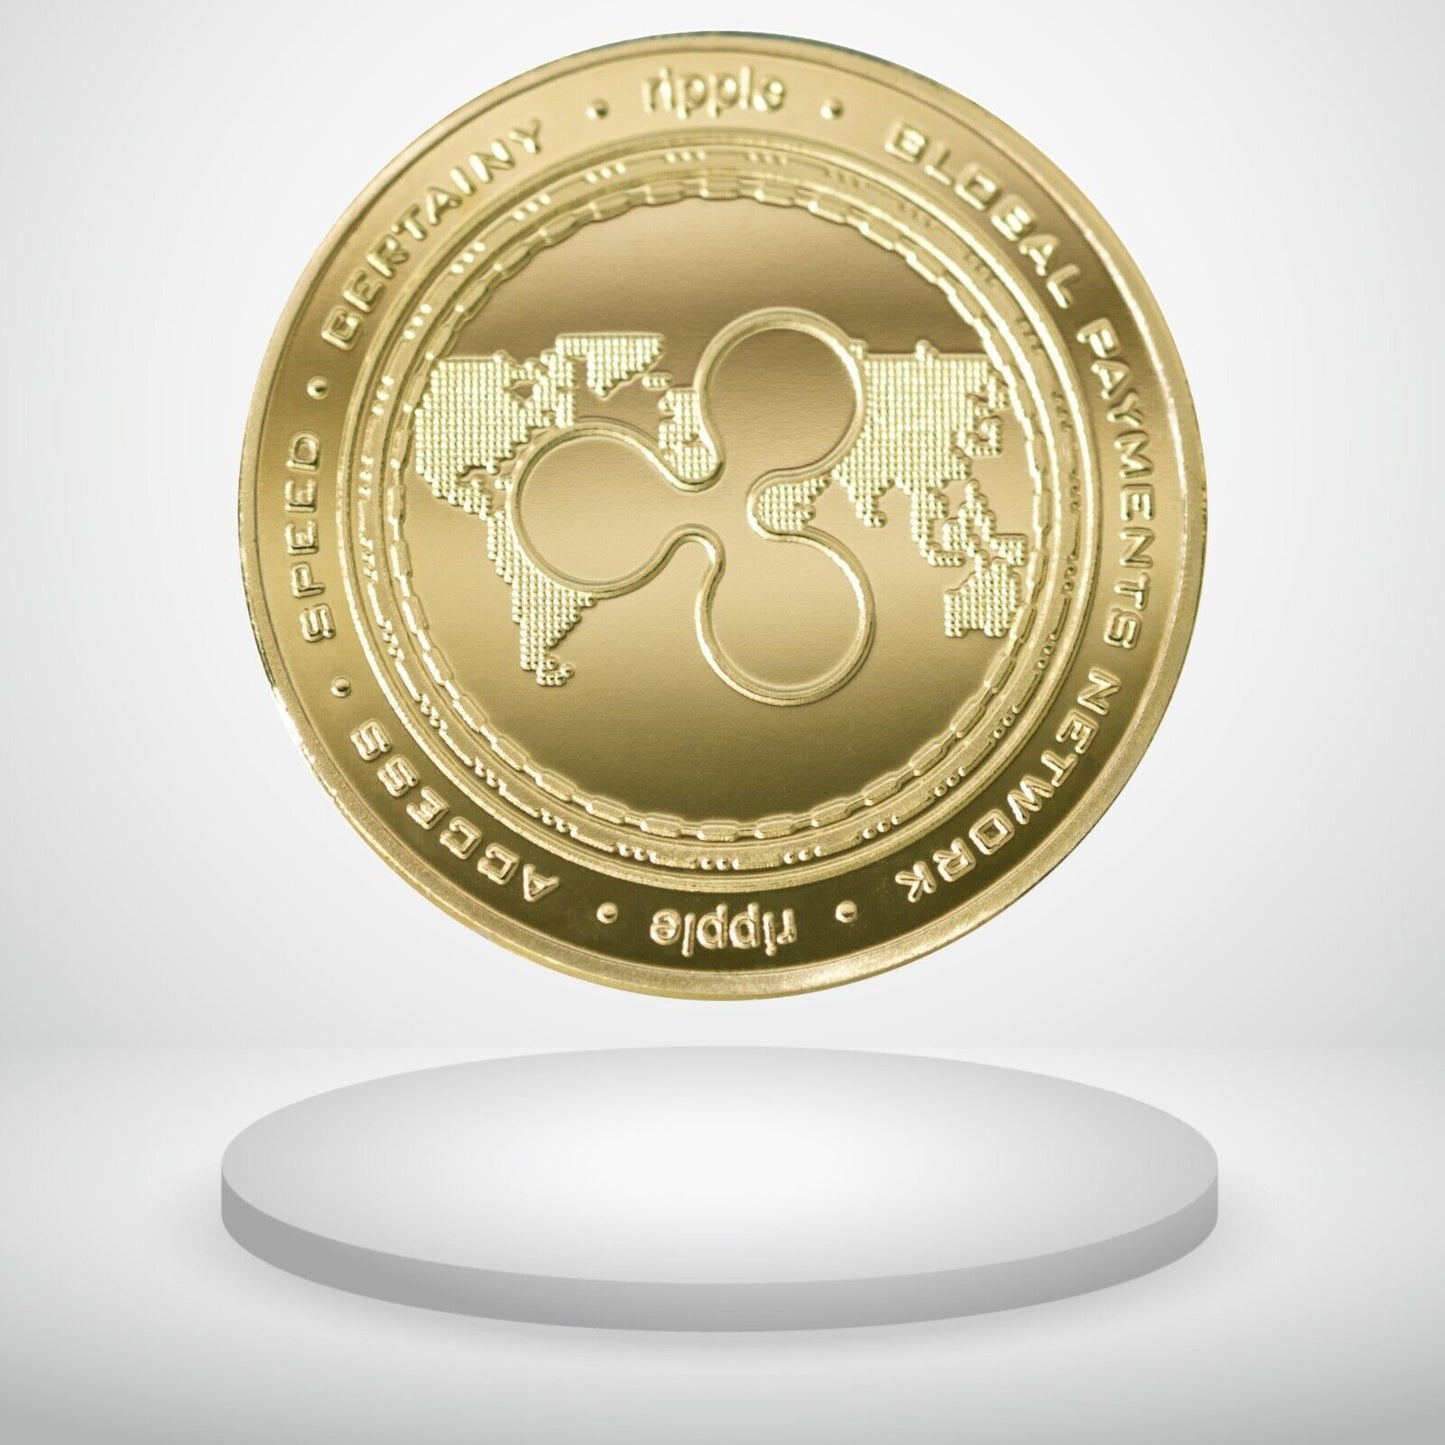 Ripple | XRP Physical Crypto Coin Novelty Souvenir Token Gold Color